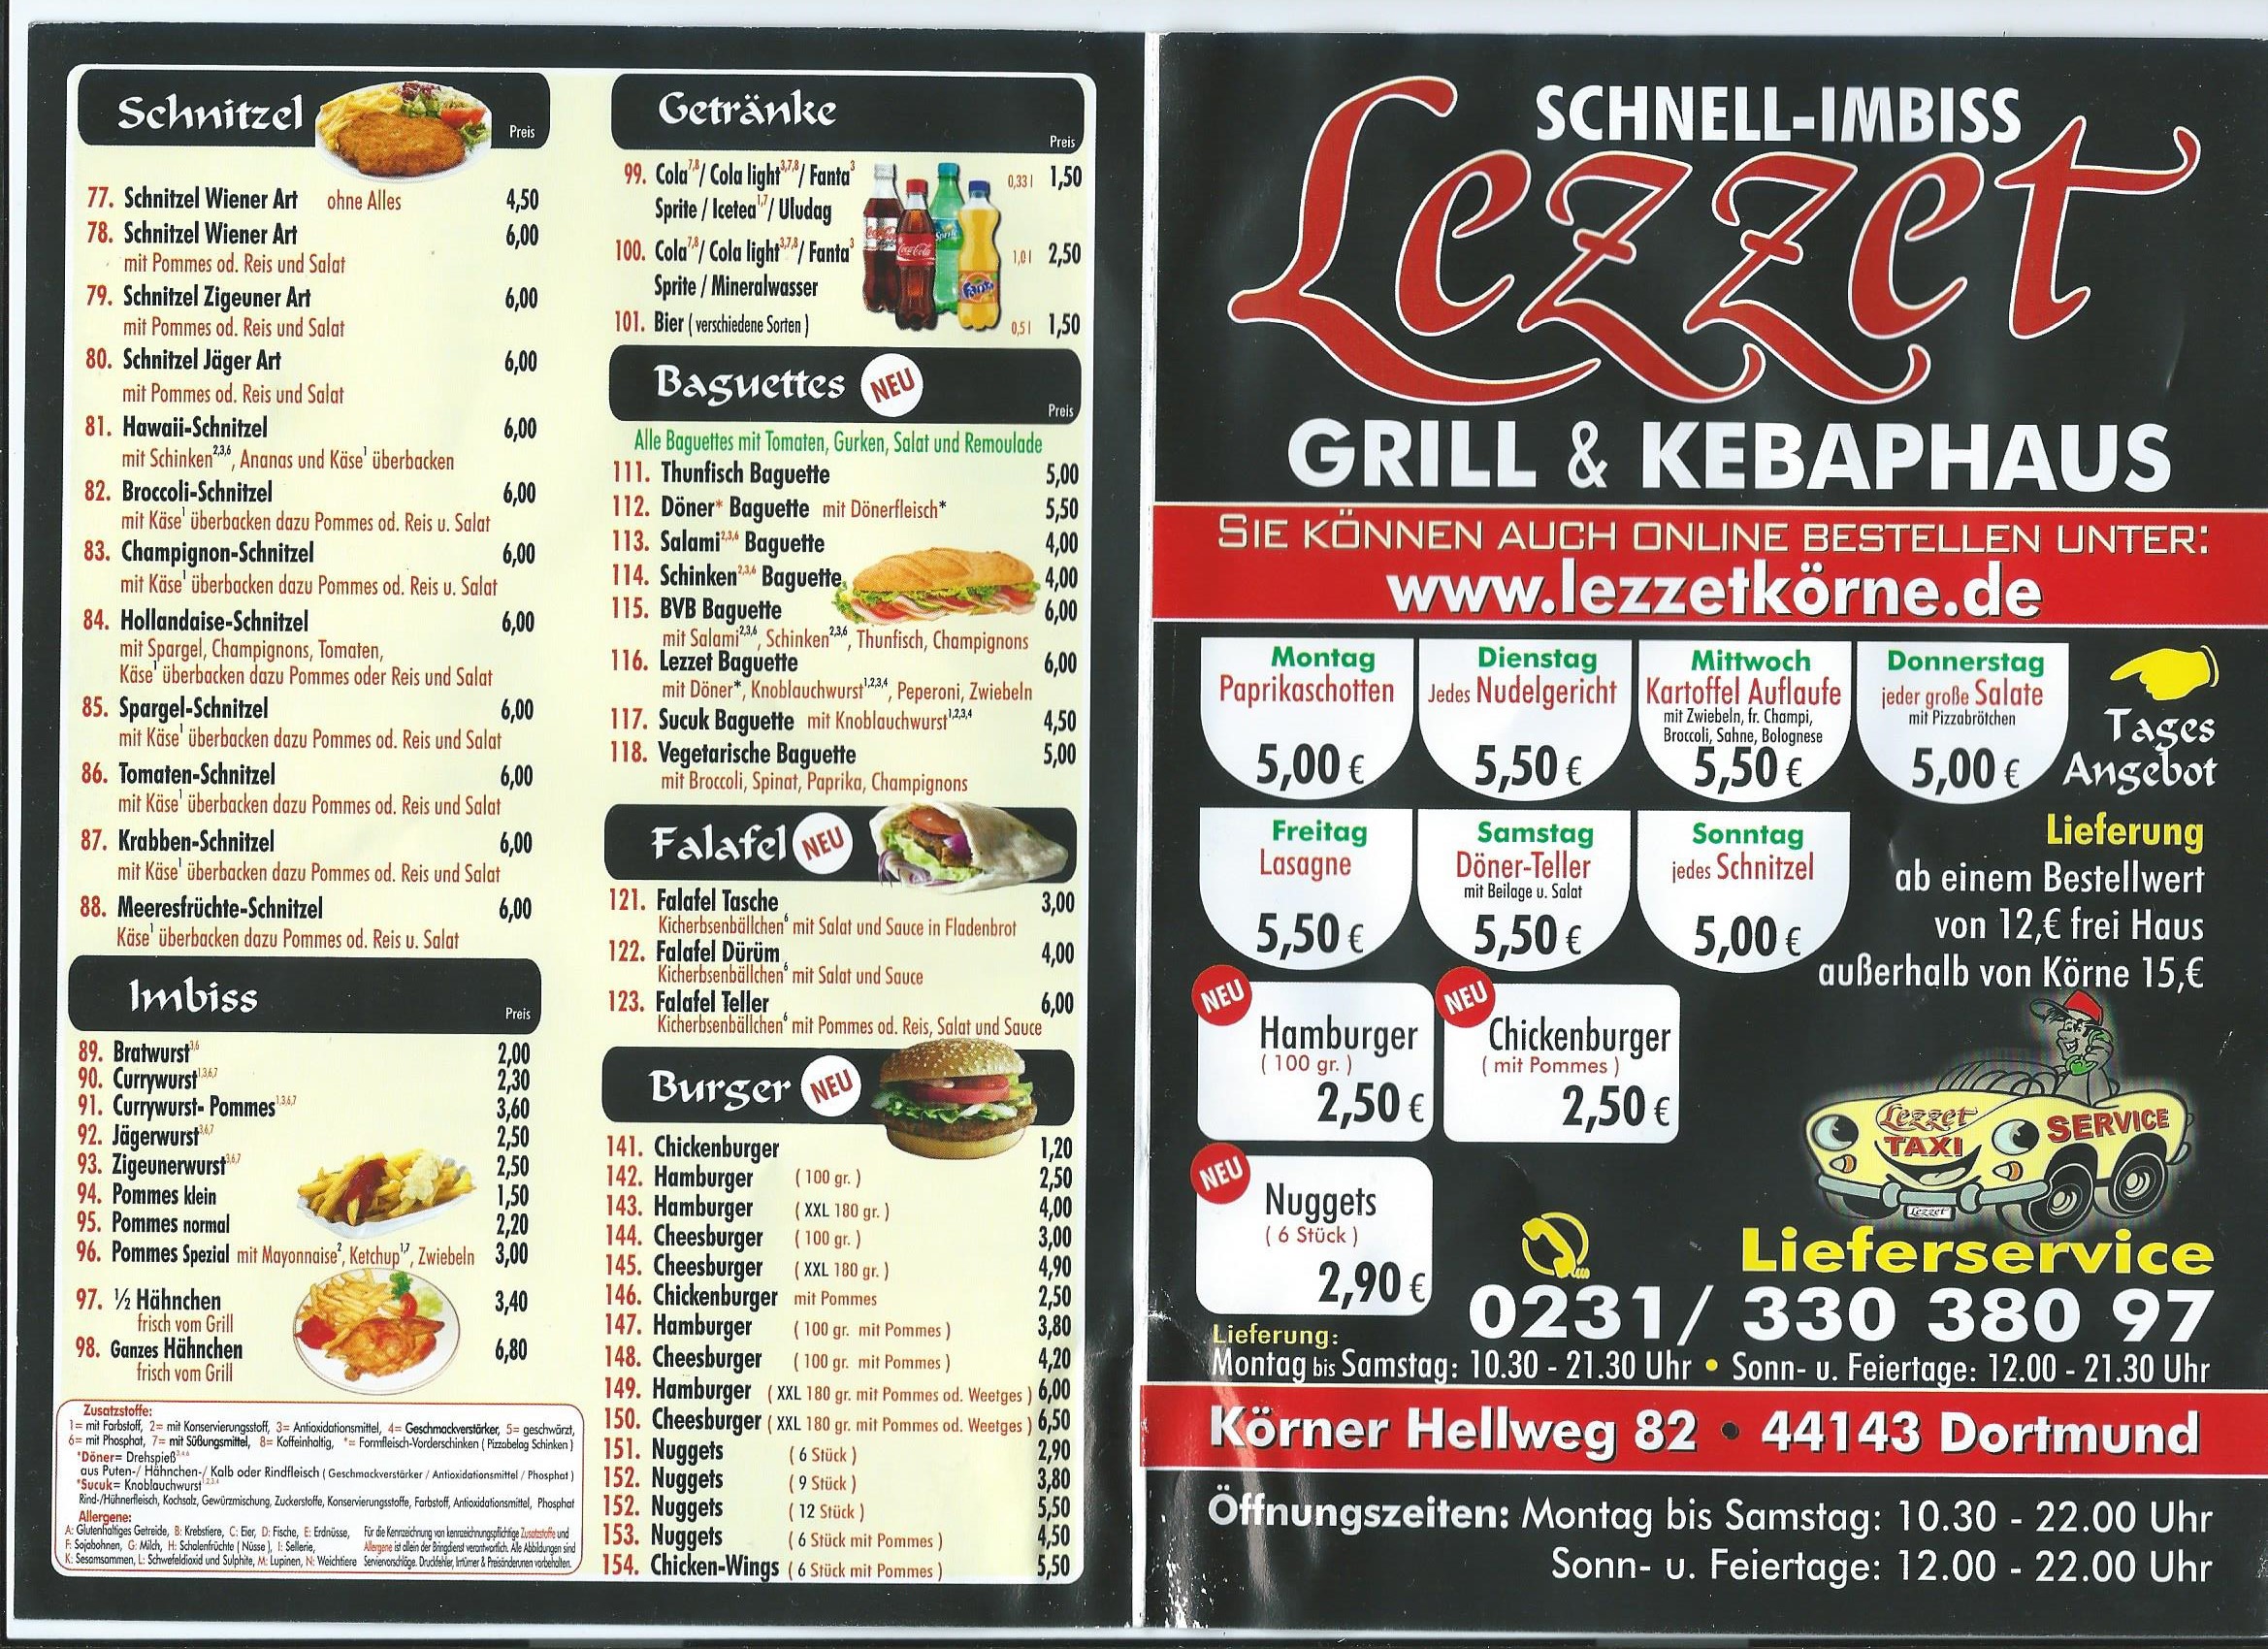 ➤ Lezzet Grill und Kebaphaus 44143 Dortmund-Körne Öffnungszeiten | Adresse  | Telefon